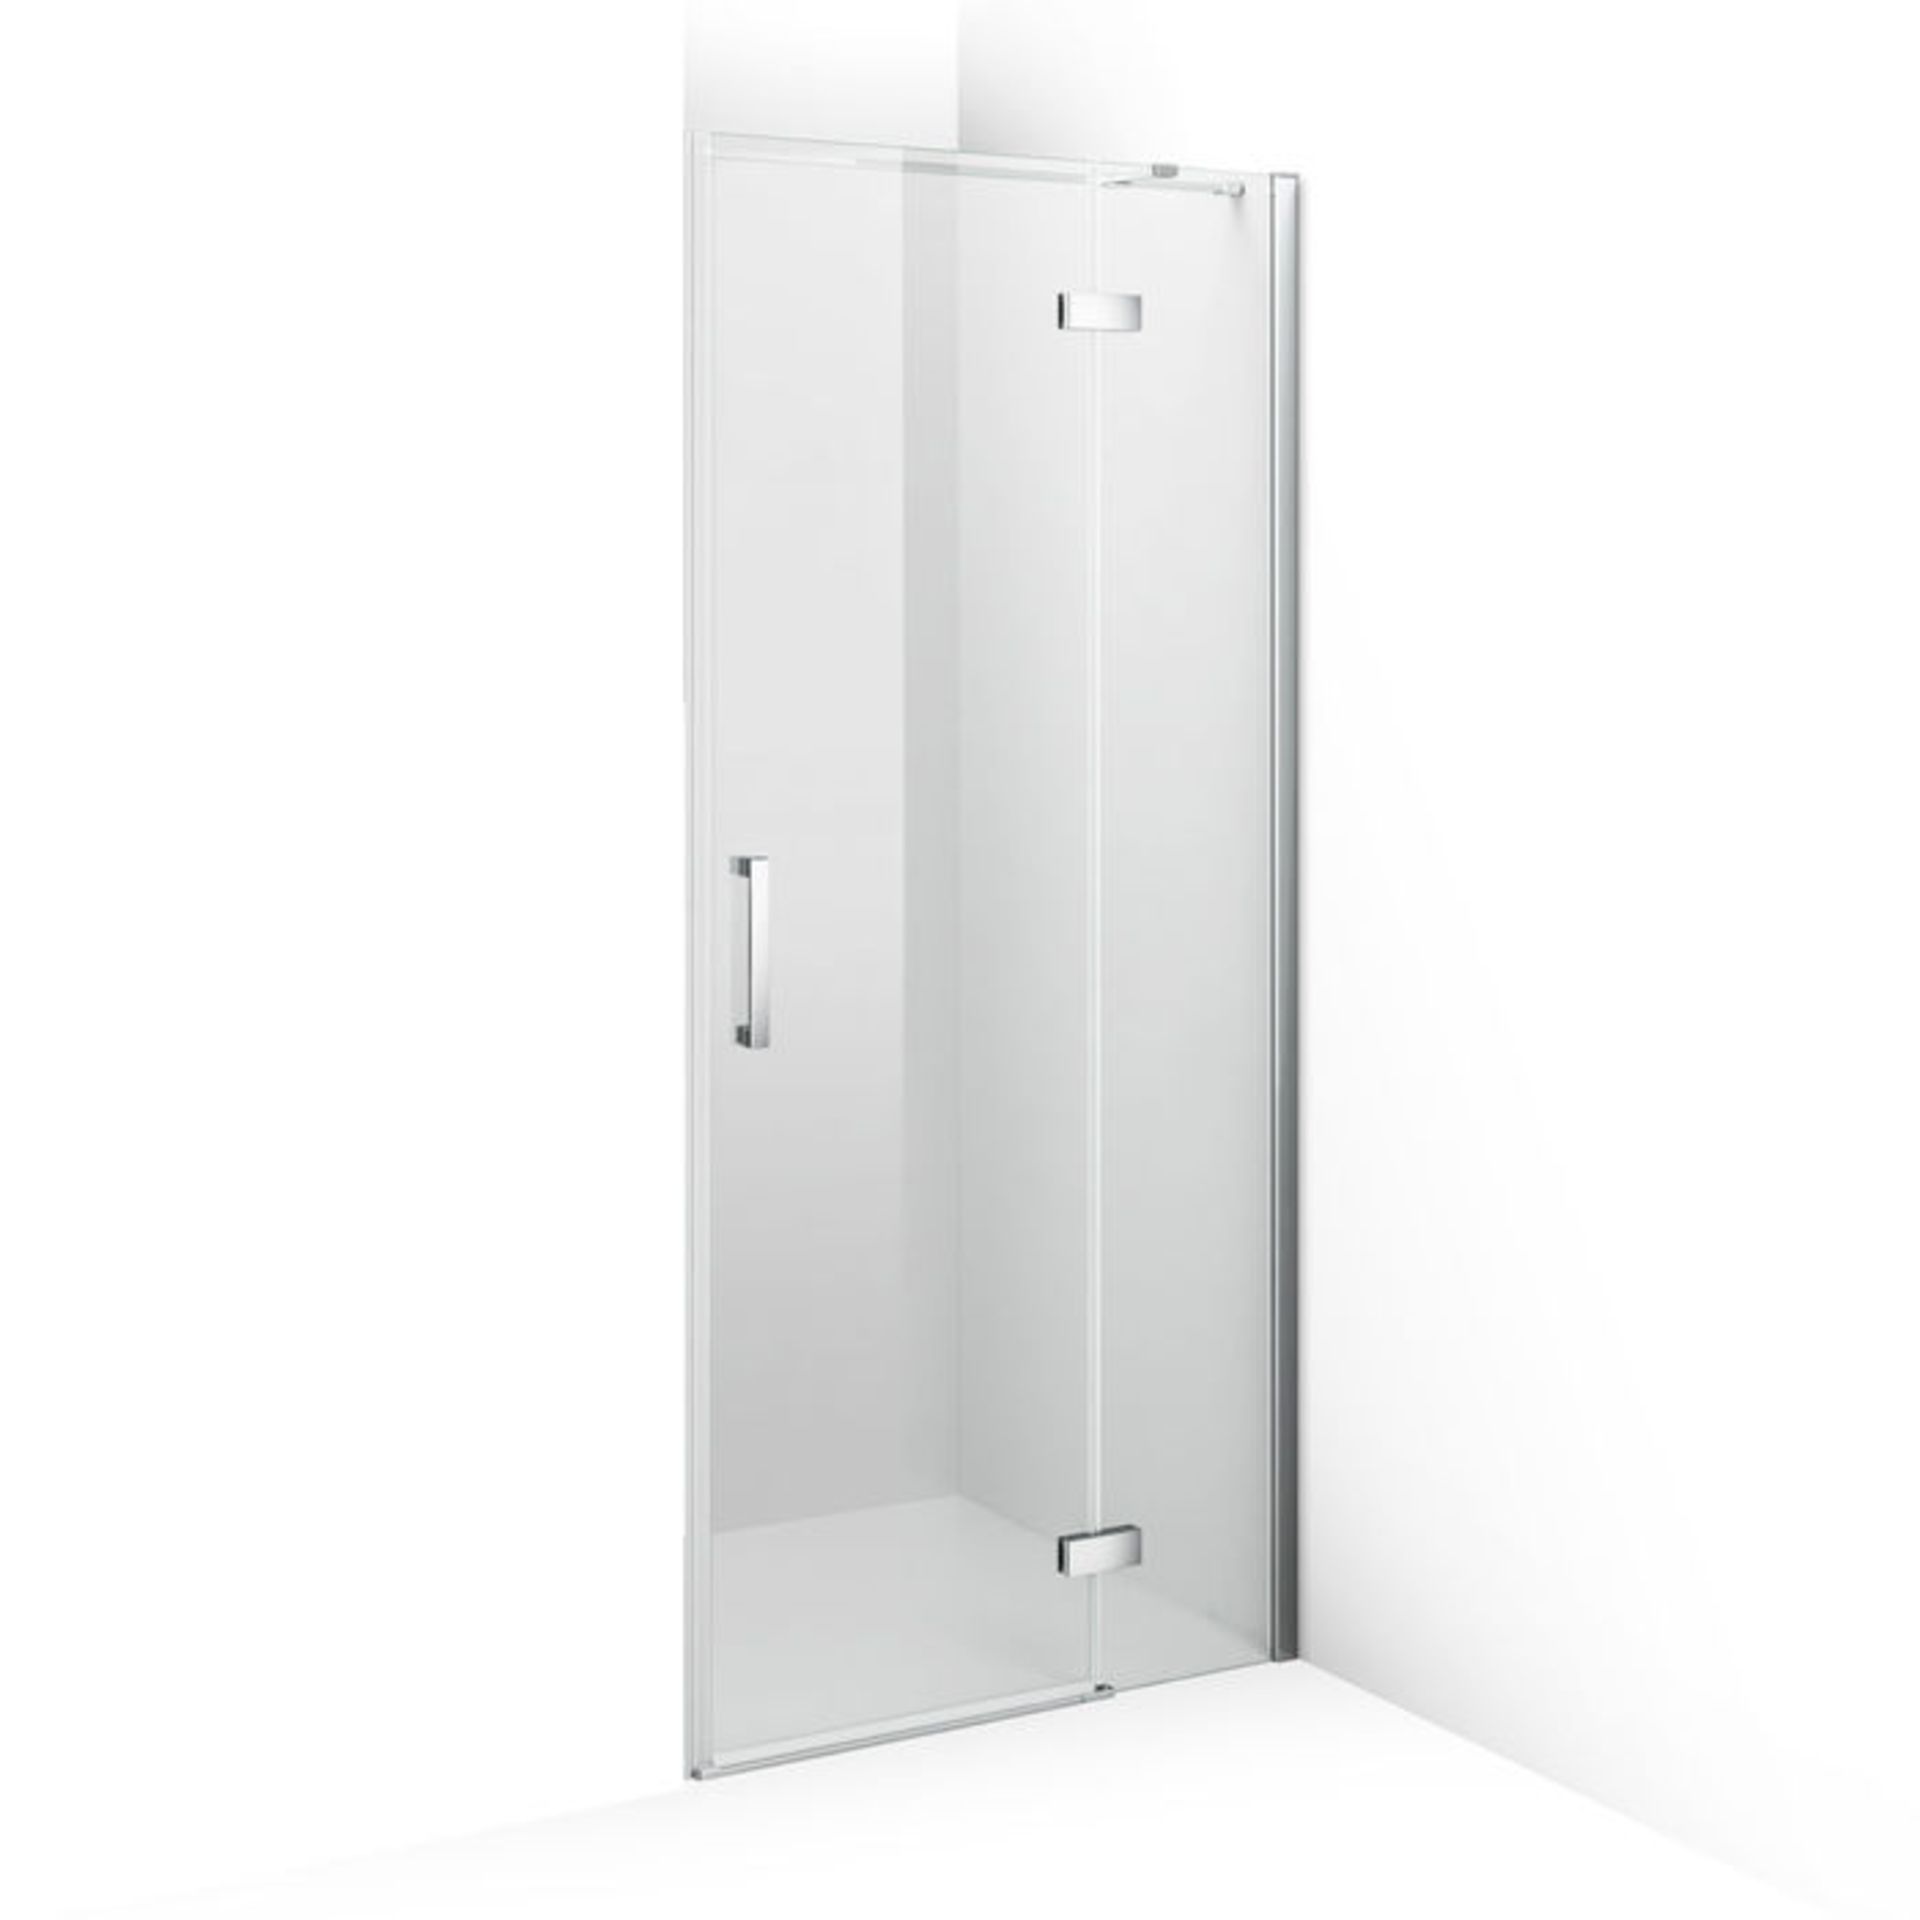 (VN237) 900mm - 8mm - Premium EasyClean Hinged Shower Door. RRP £524.99. 8mm EasyClean glass - Our - Image 5 of 5